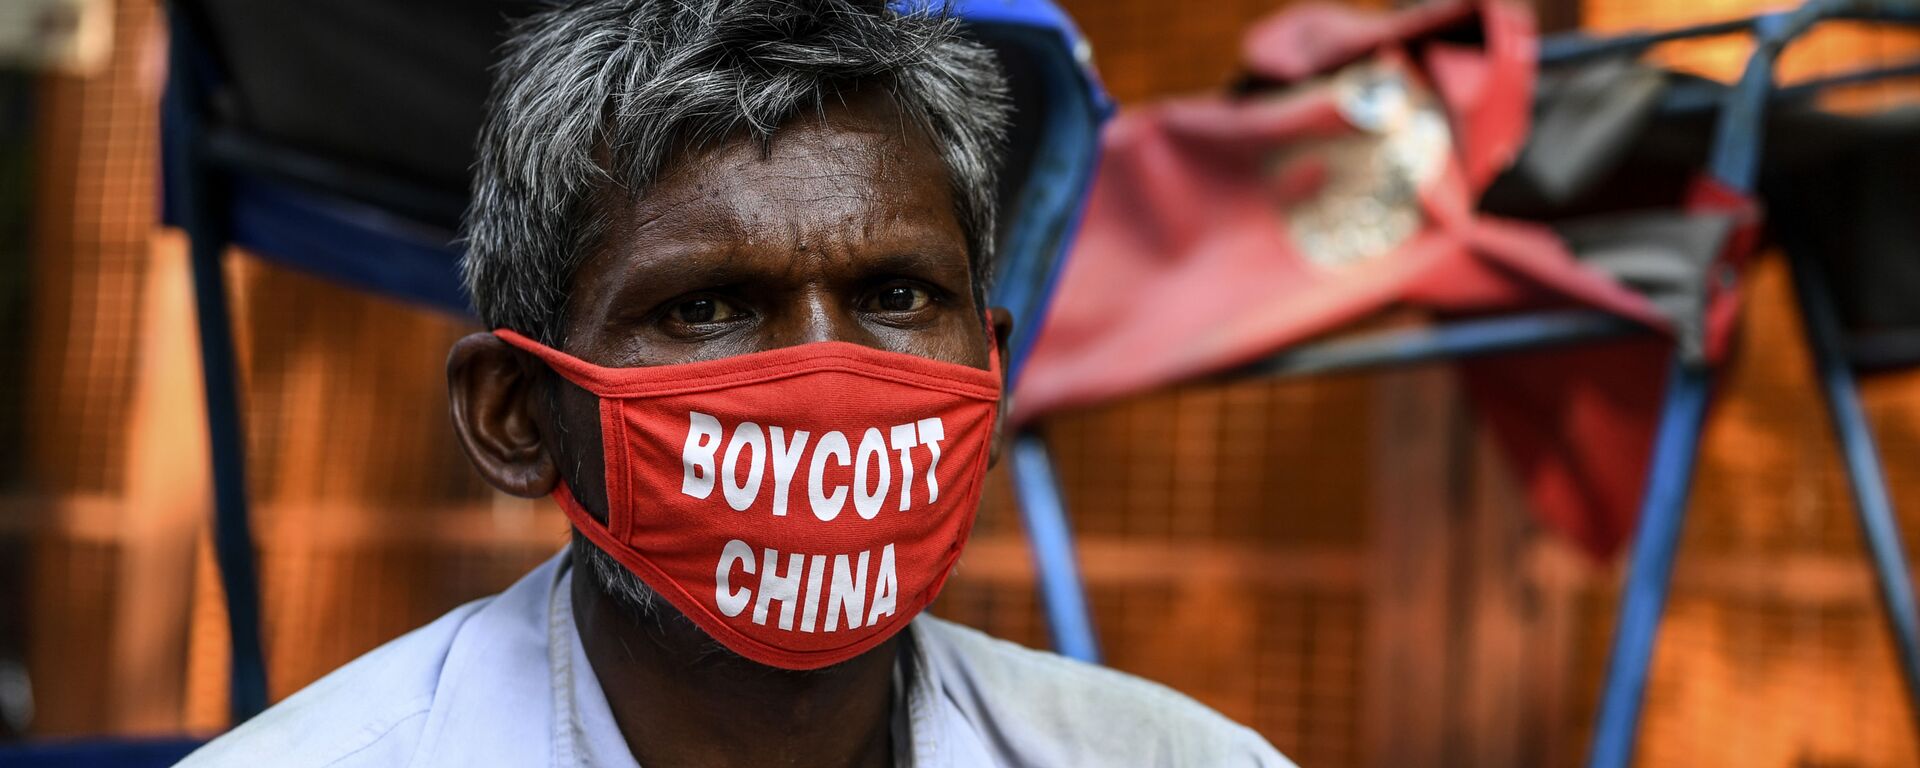 Мужчина в маске с надписью бойкот Китаю в Нью Дели, фото из архива - Sputnik Azərbaycan, 1920, 05.08.2020